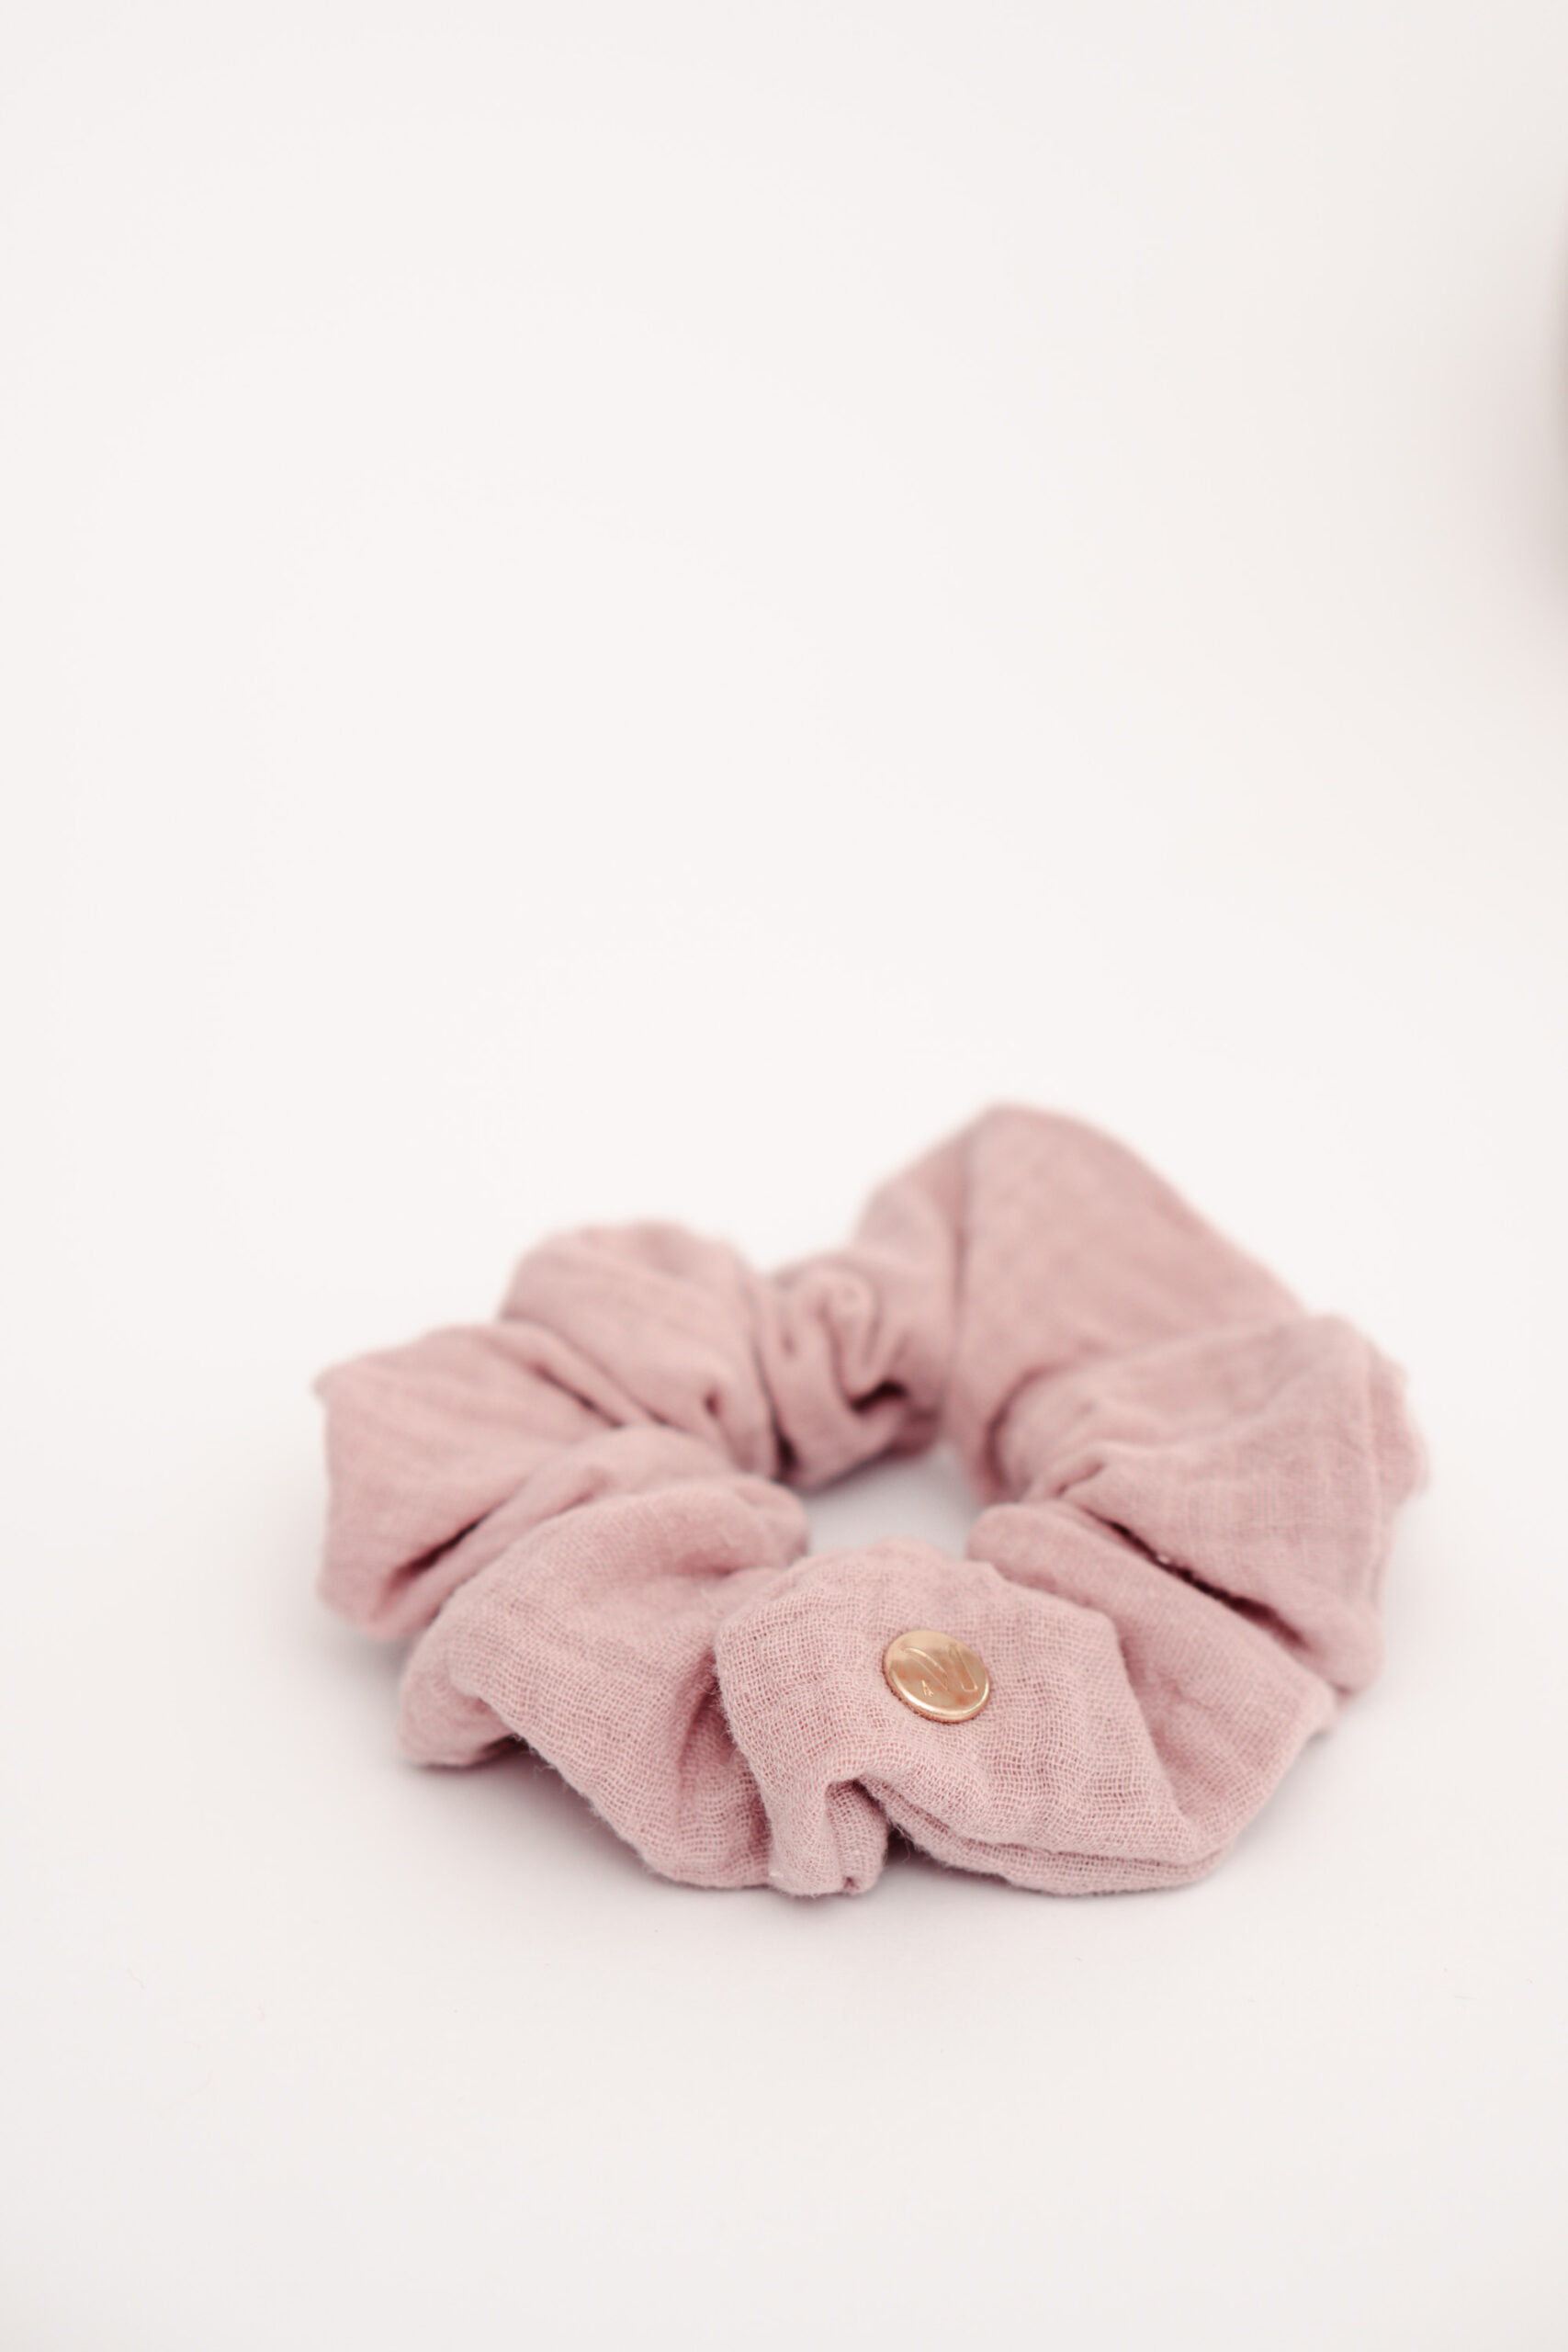 Geschenkidee für Frauen Scrunchie Set Musselin pink rosa beige